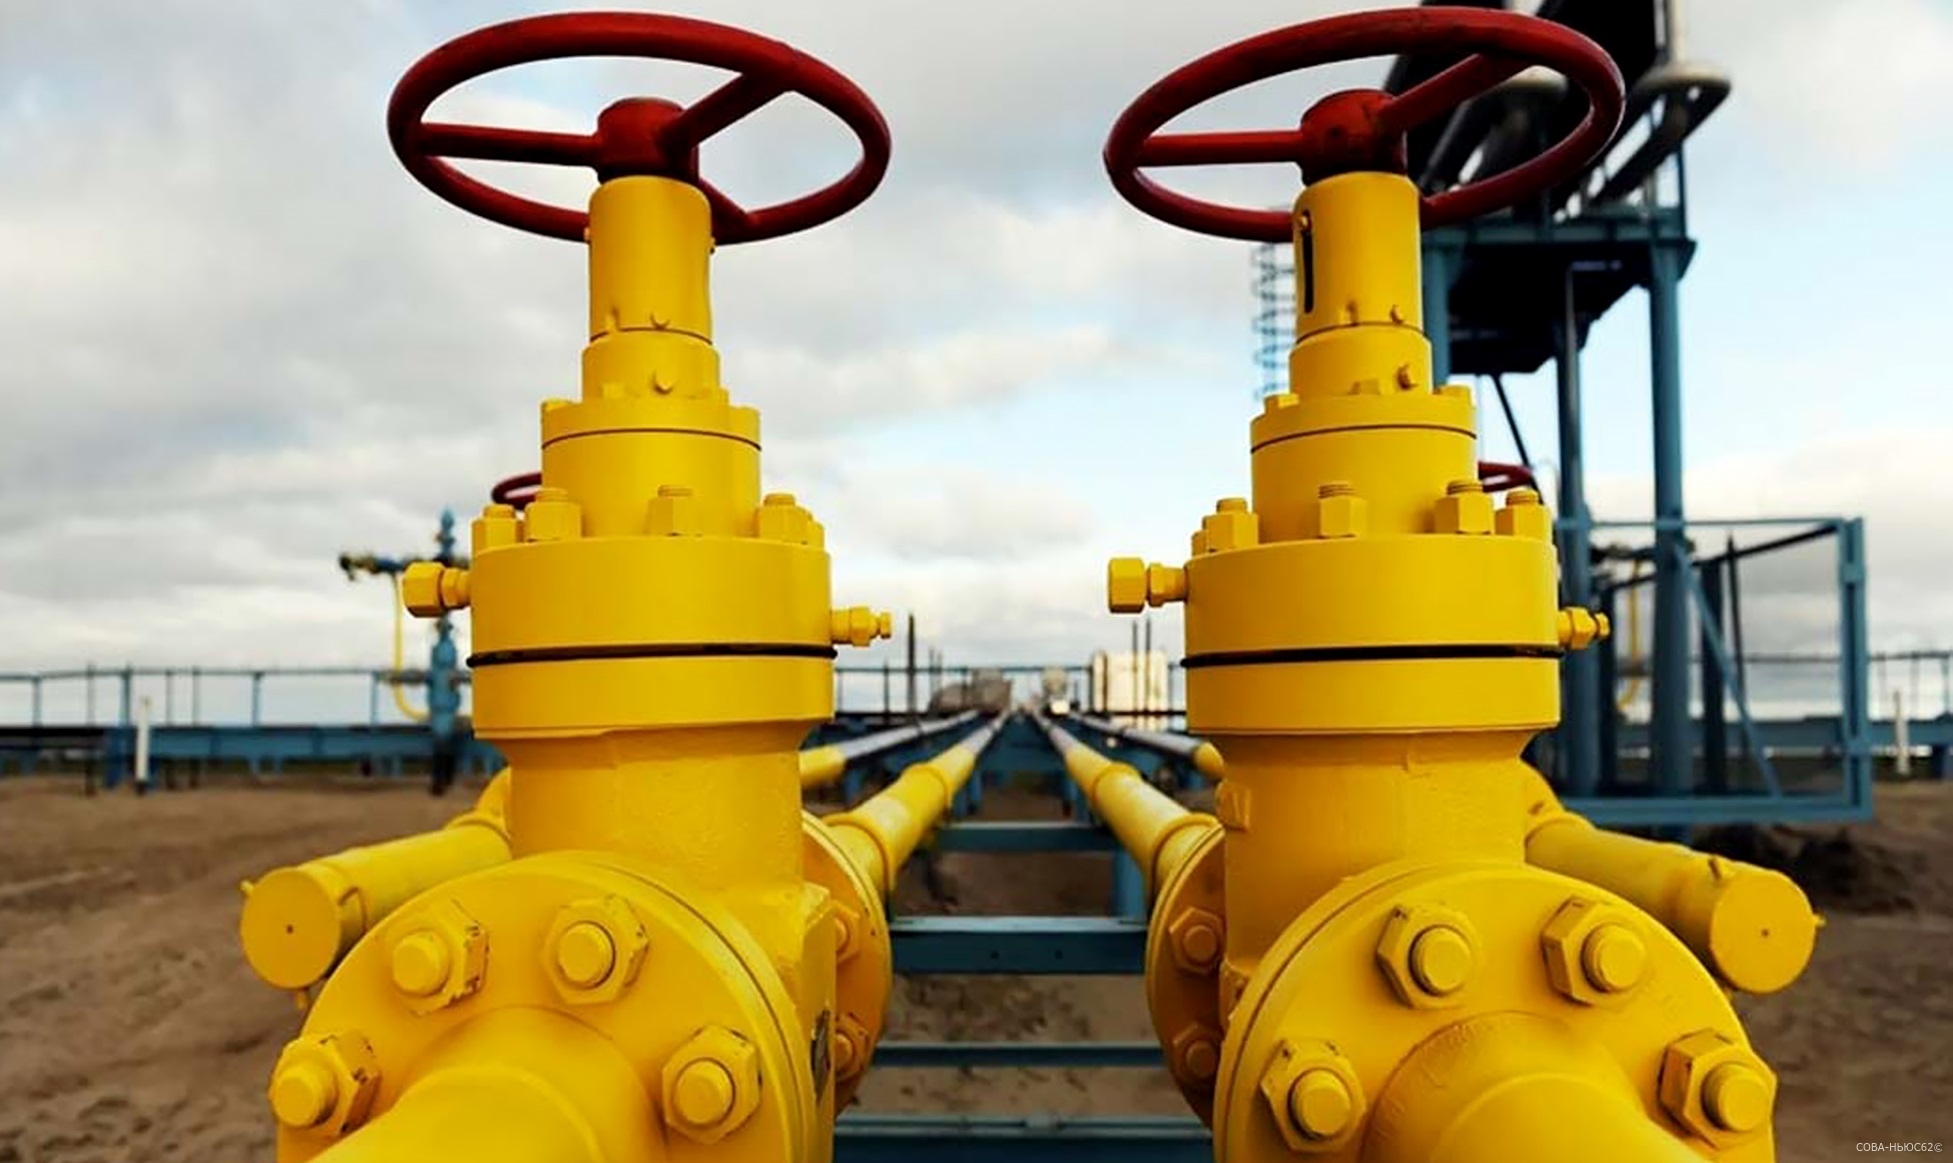 Для «Газпрома» наступило лучшее время наращивать сбыт газа в глубинке